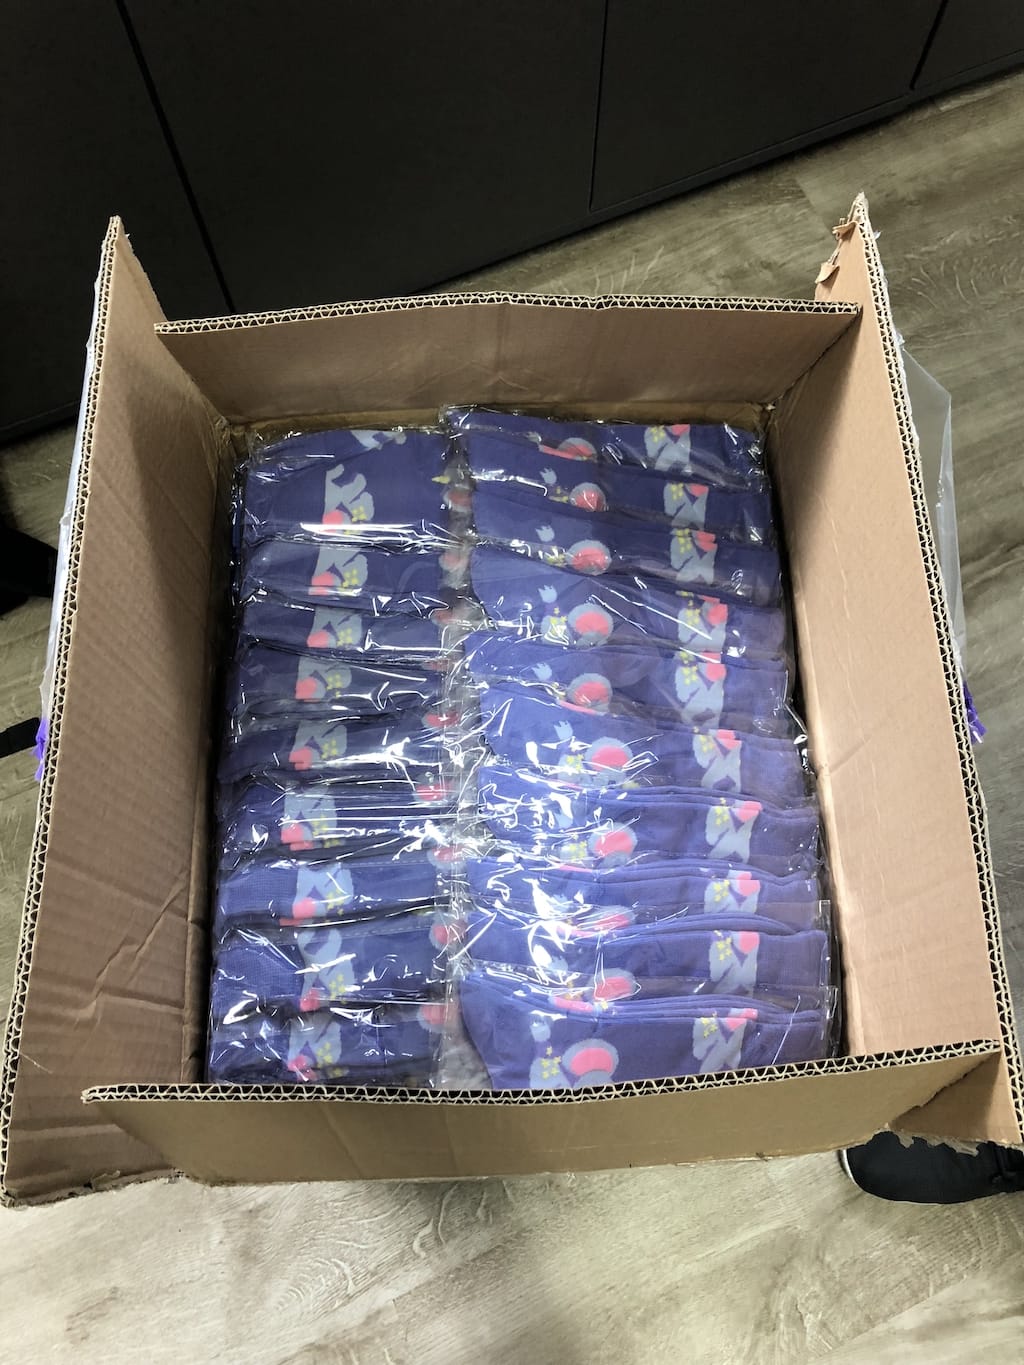 Elephant socks in a box, from Fuzhou Firebird Sporting Goods Co., Ltd.